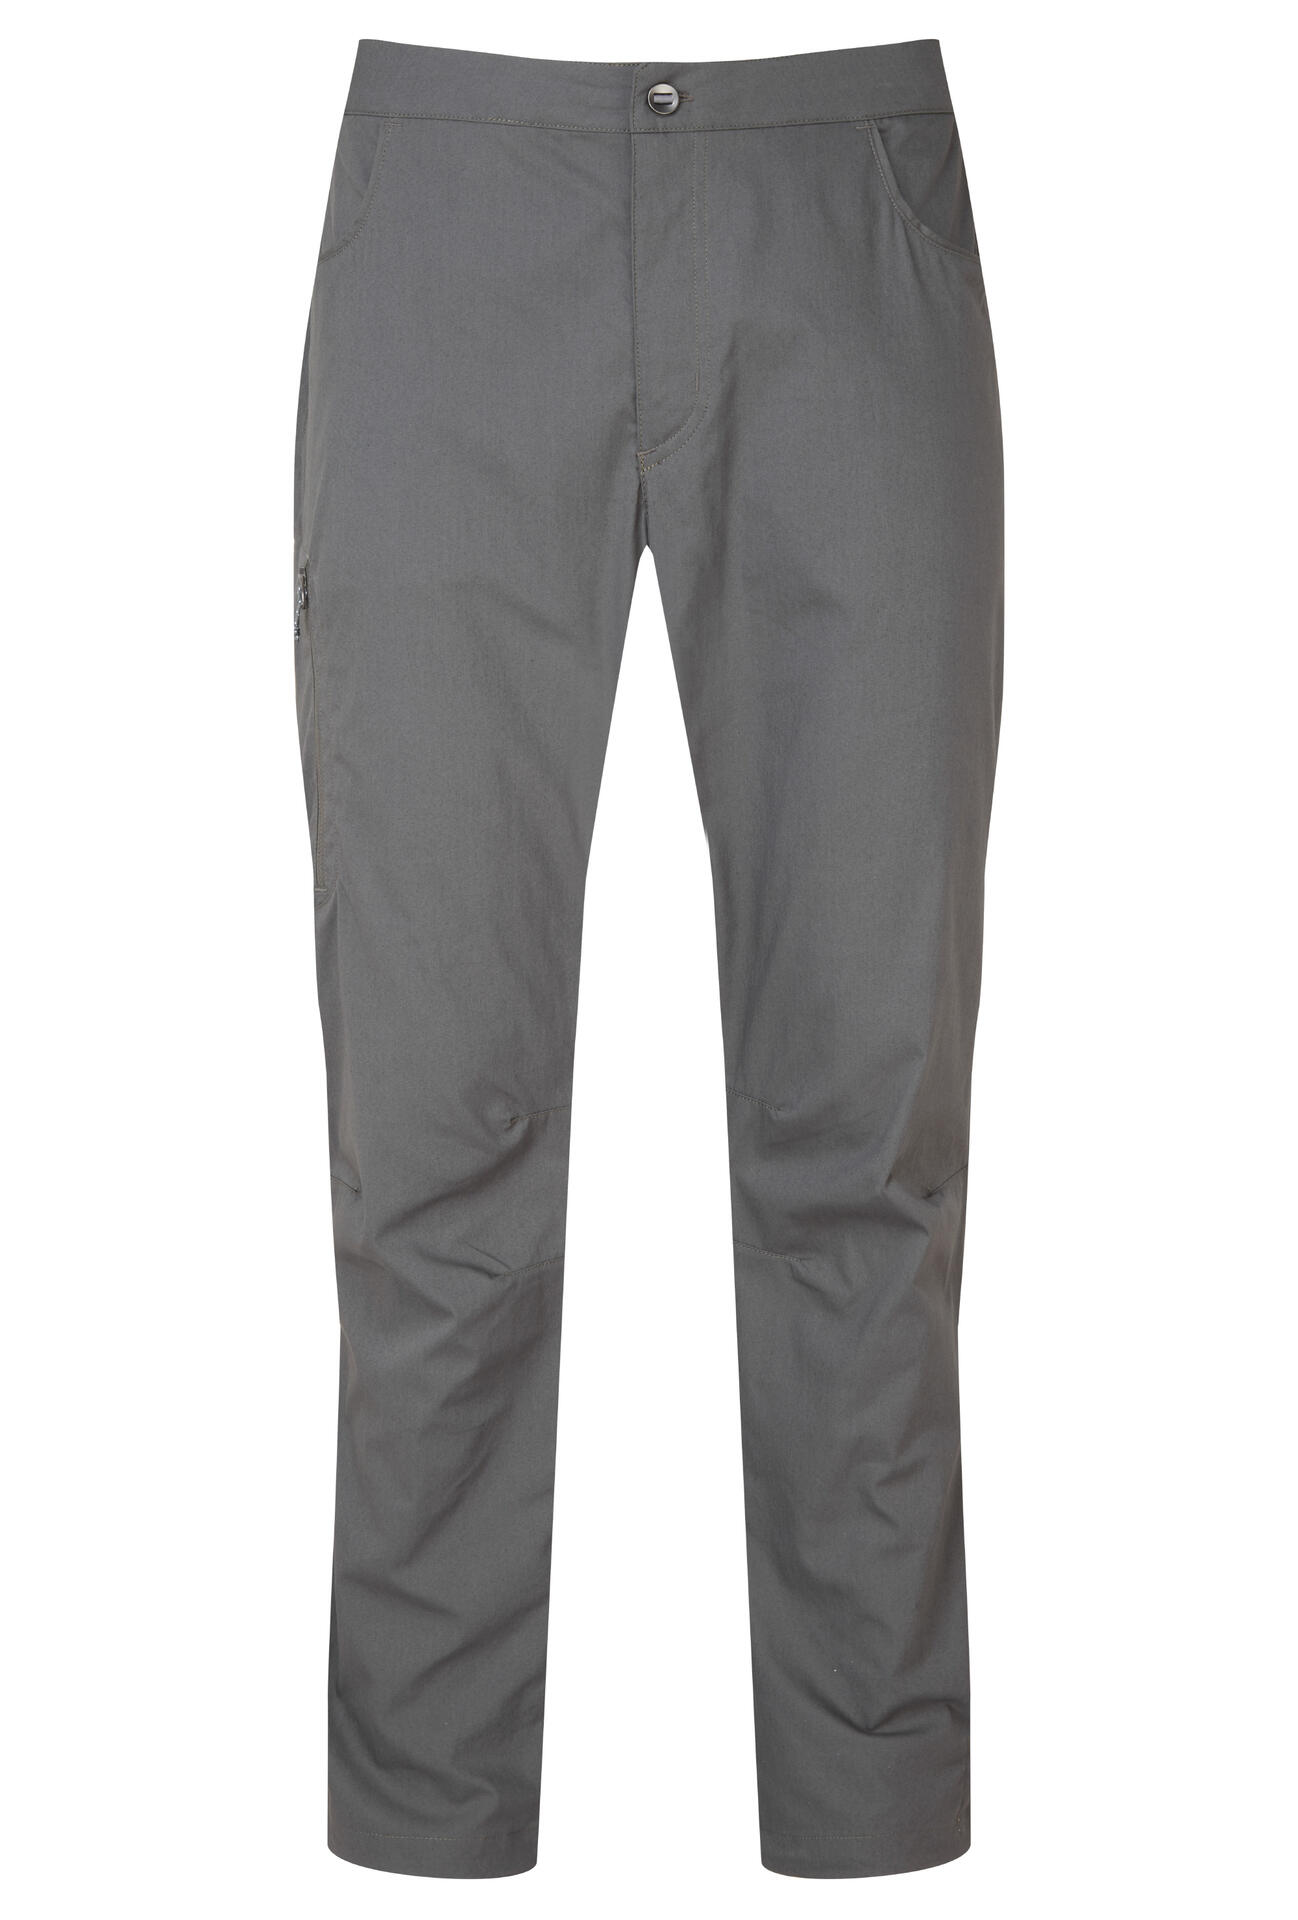 Mountain Equipment Anvil Pant Men'S - prodloužené nohavice Barva: Shadow Grey, Velikost: M